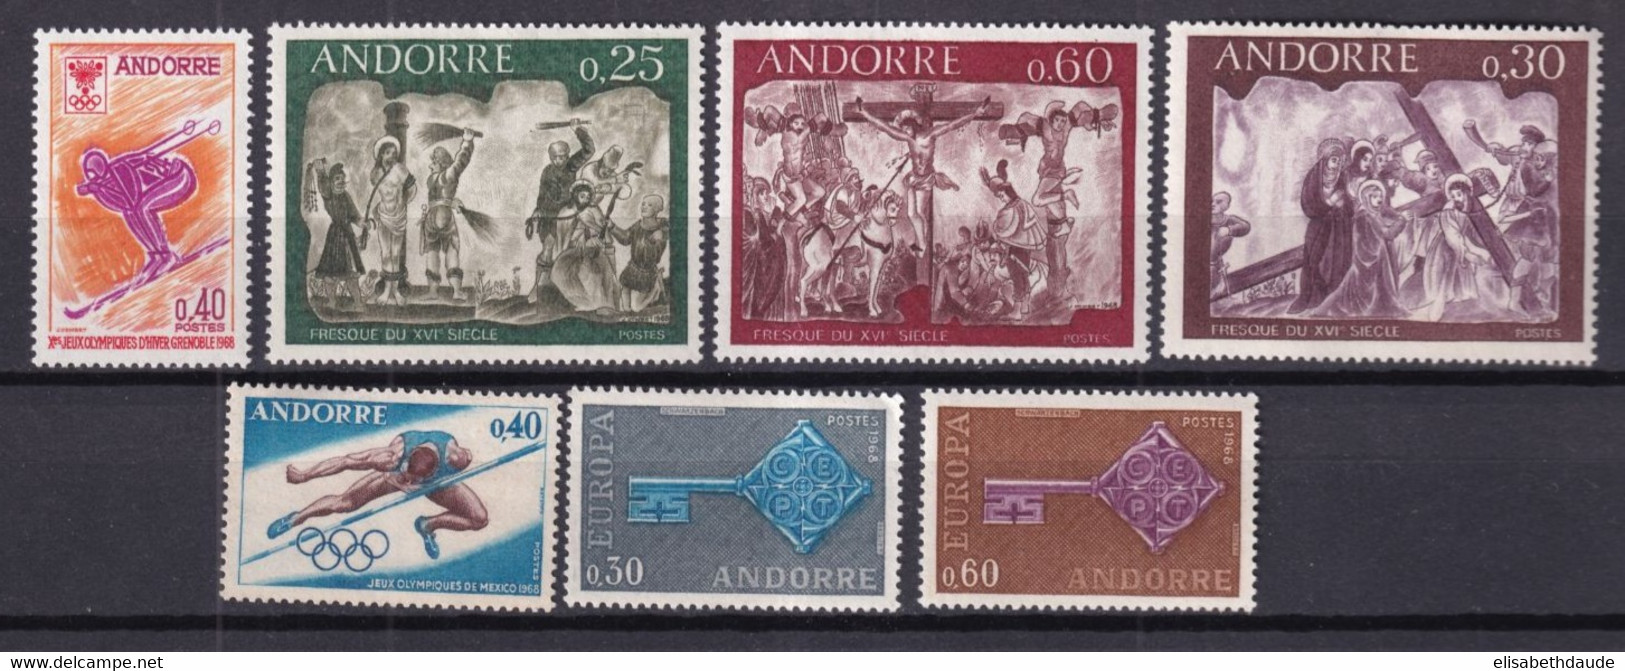 ANDORRE - ANNEE COMPLETE 1968 YVERT N°187/193 ** MNH - COTE 2017 = 43.5 EUR. - - Ganze Jahrgänge